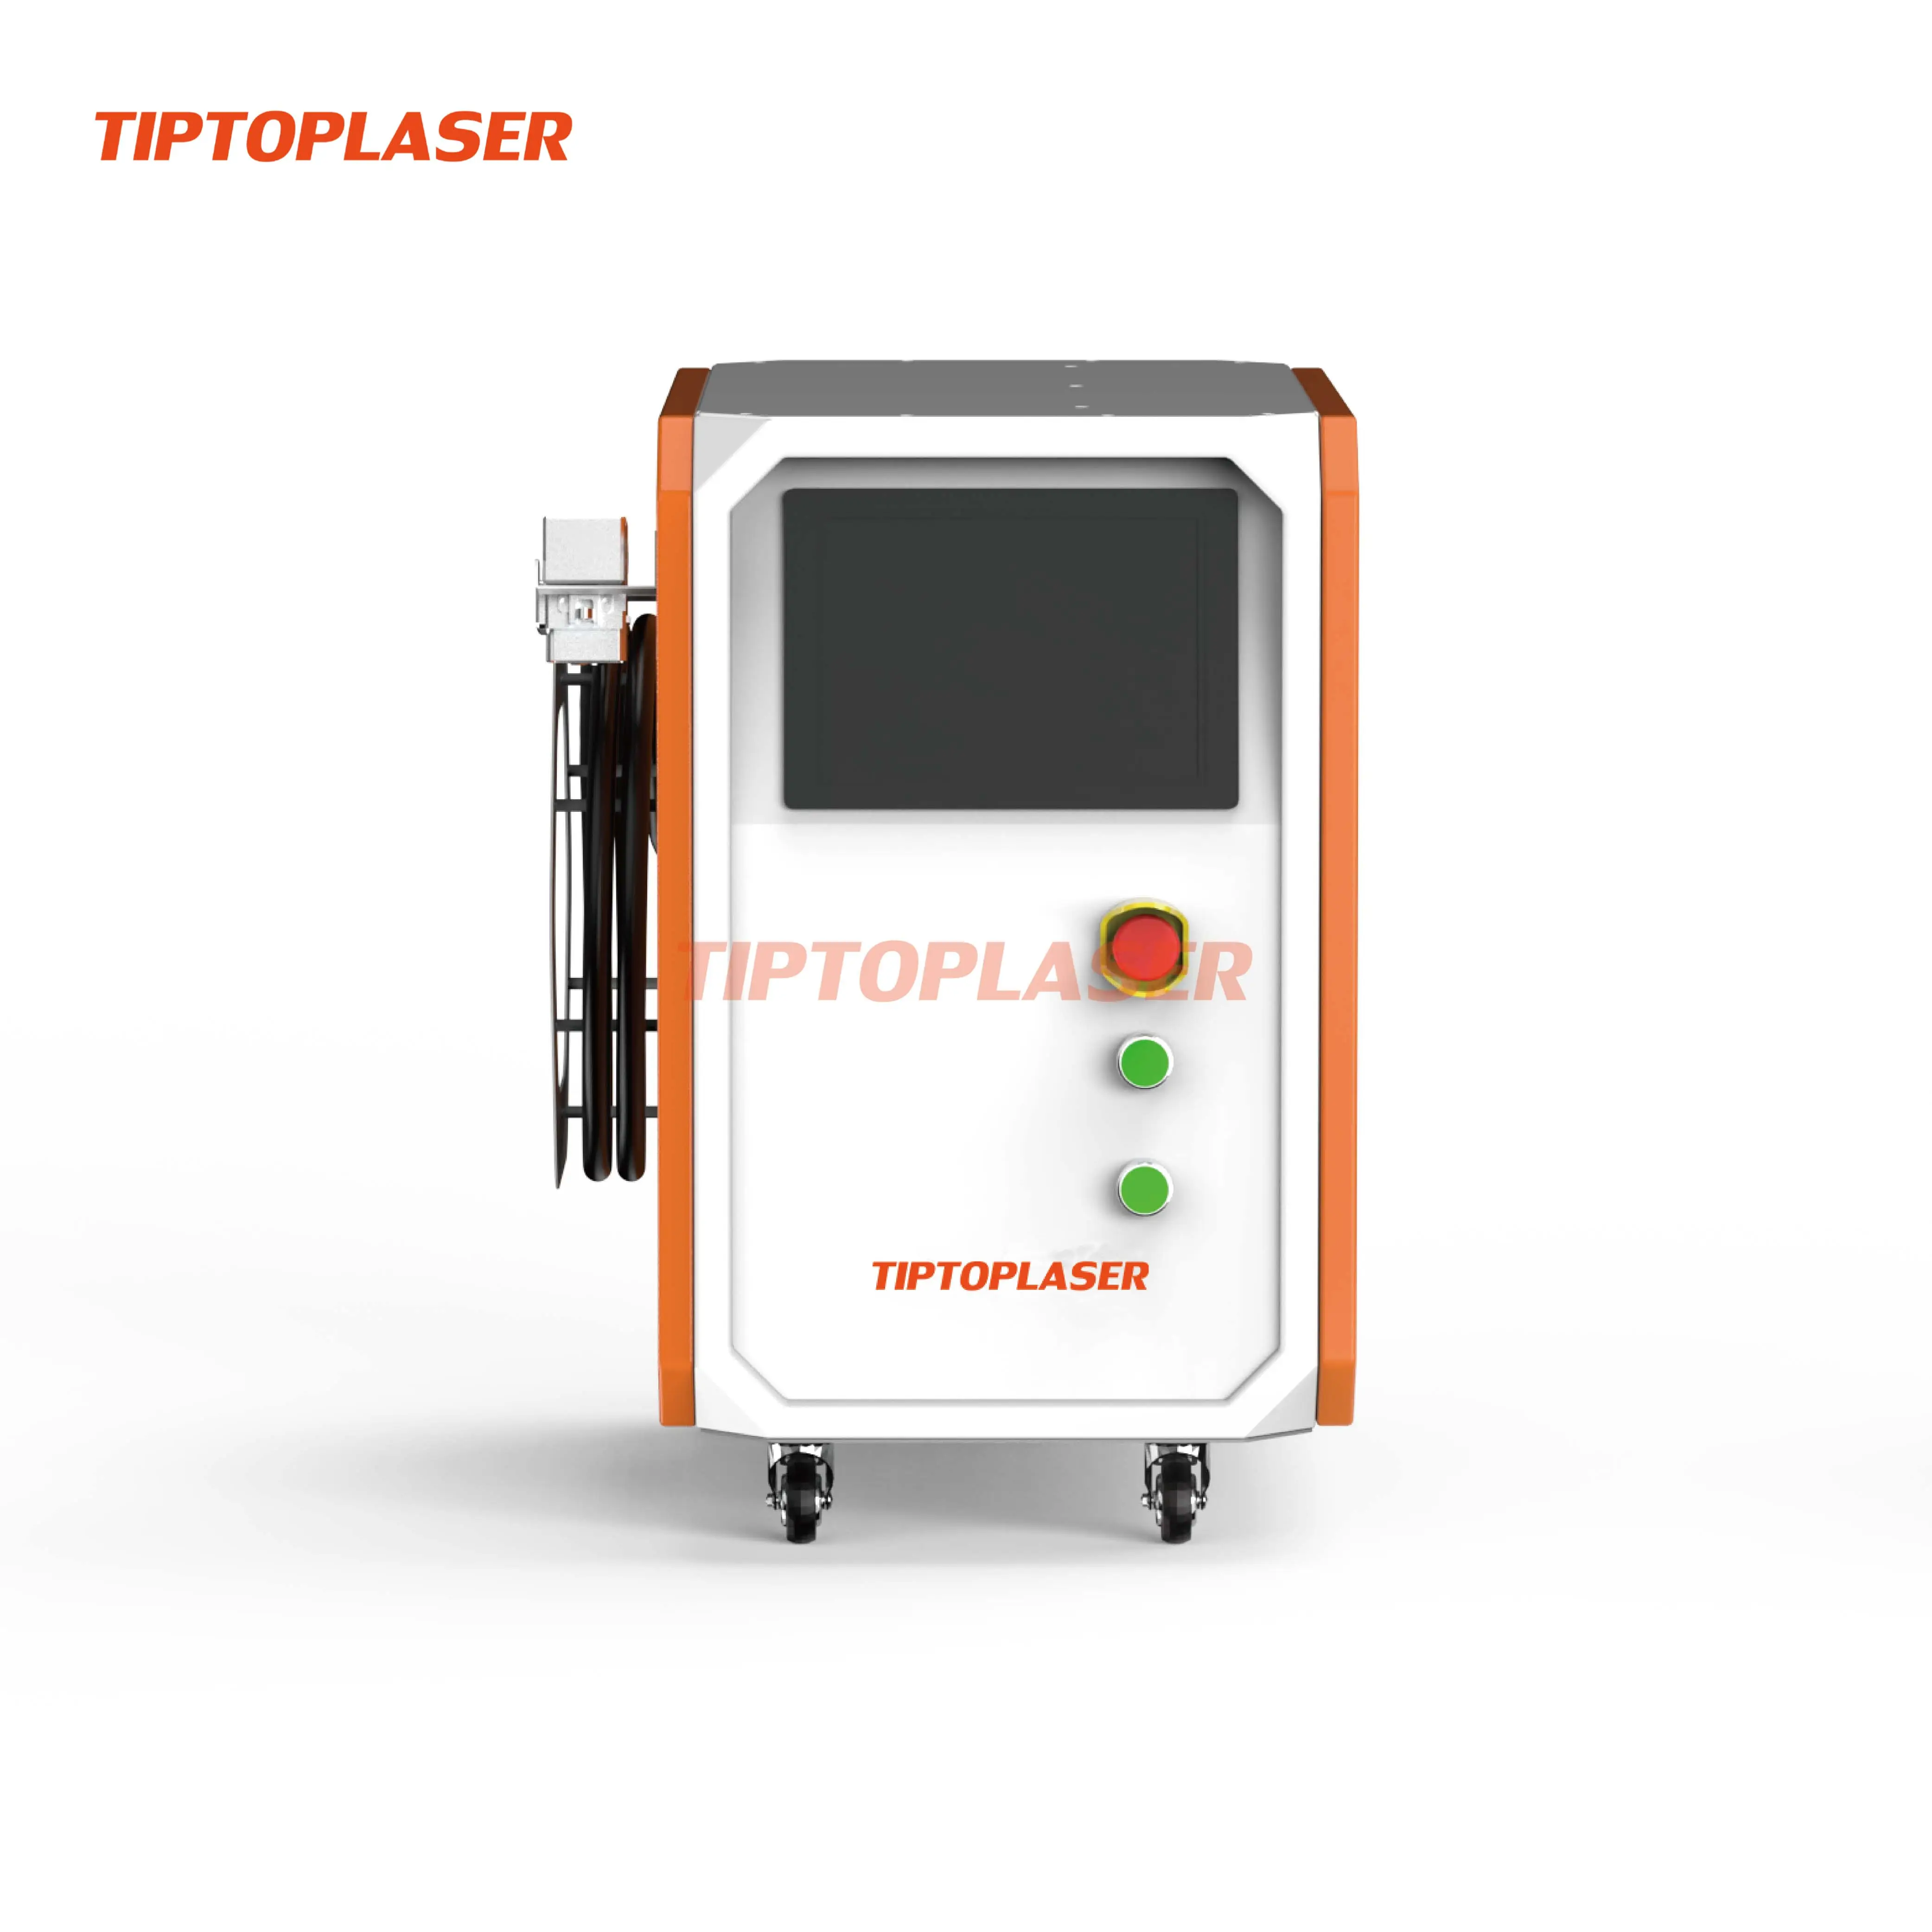 Laser tiptop: alto livello di sicurezza 1500W macchina per la pulizia laser continua raffreddata ad aria su superfici metalliche o in pietra